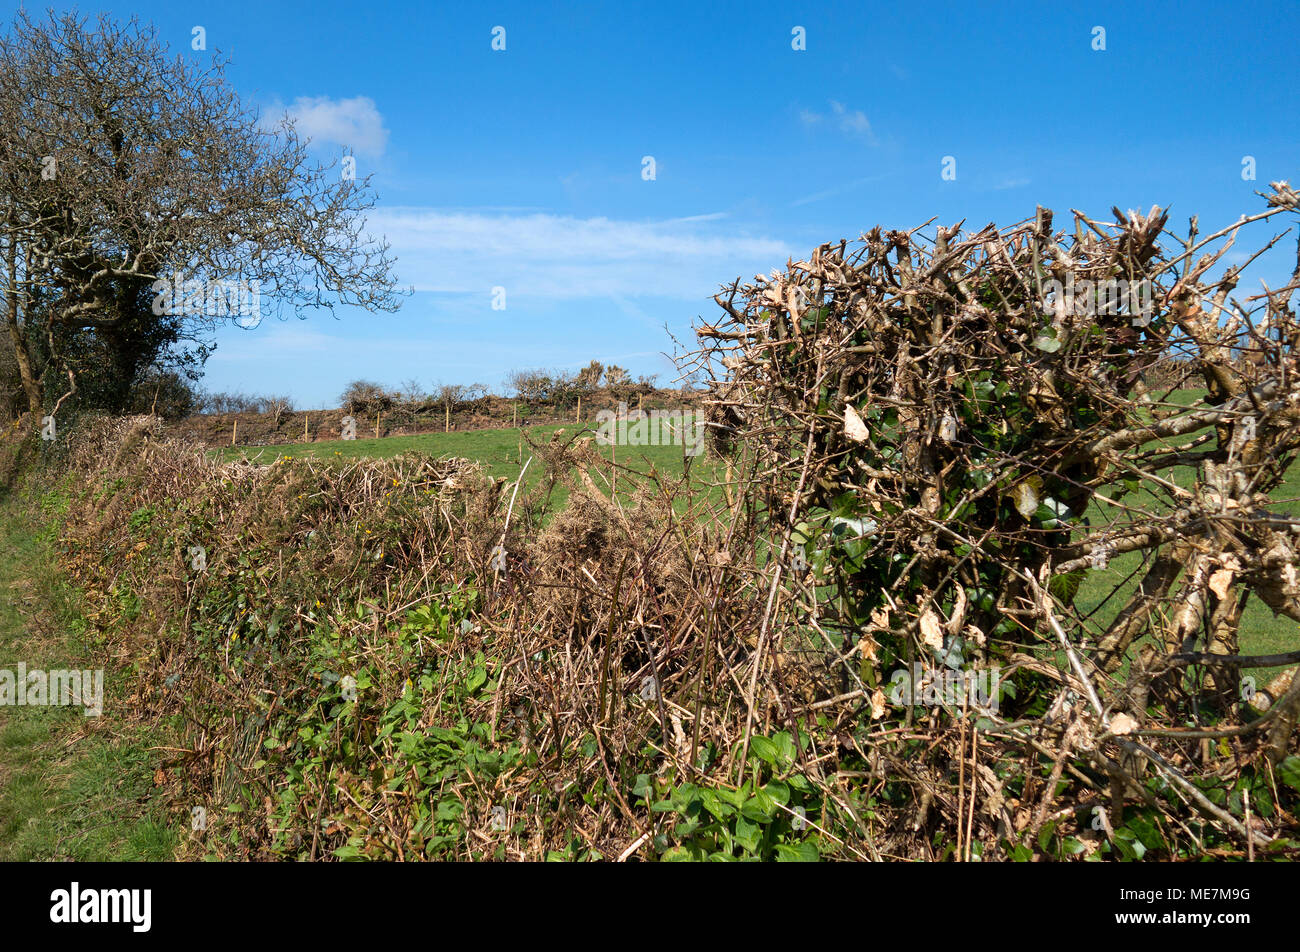 Haie taillée et taillis dans la campagne des Cornouailles, Angleterre, Grande-Bretagne, Royaume-Uni Banque D'Images